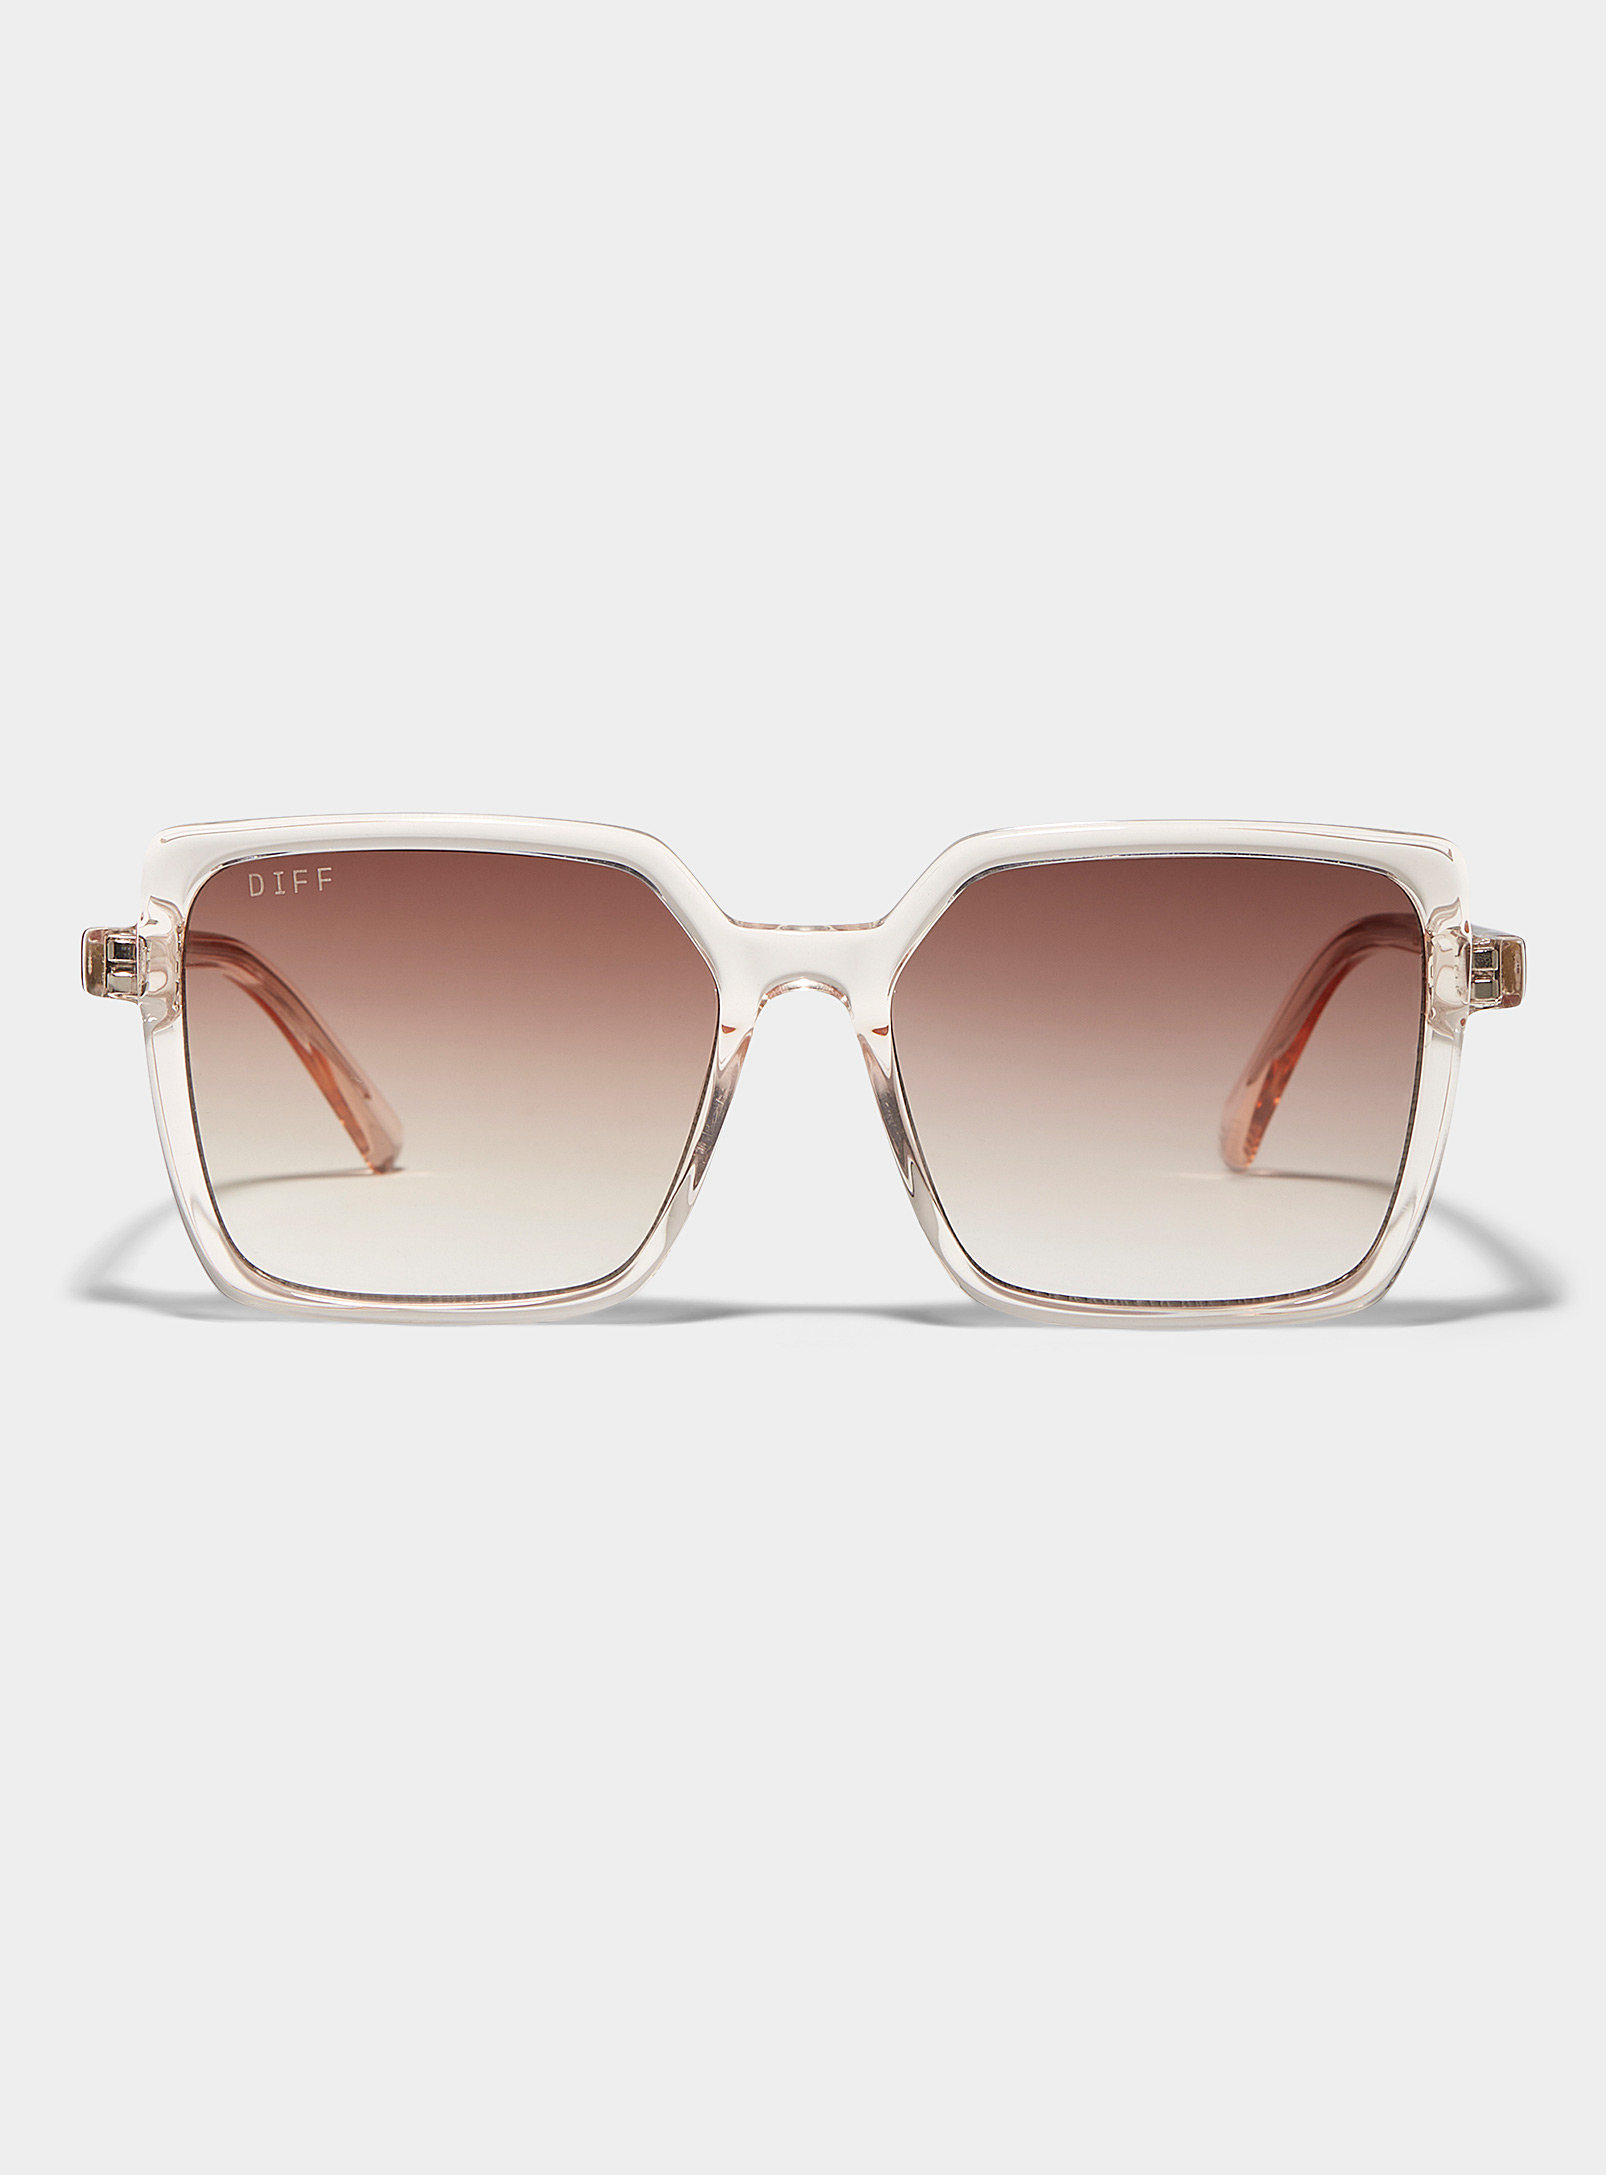 Diff Esme Square Sunglasses In Pink